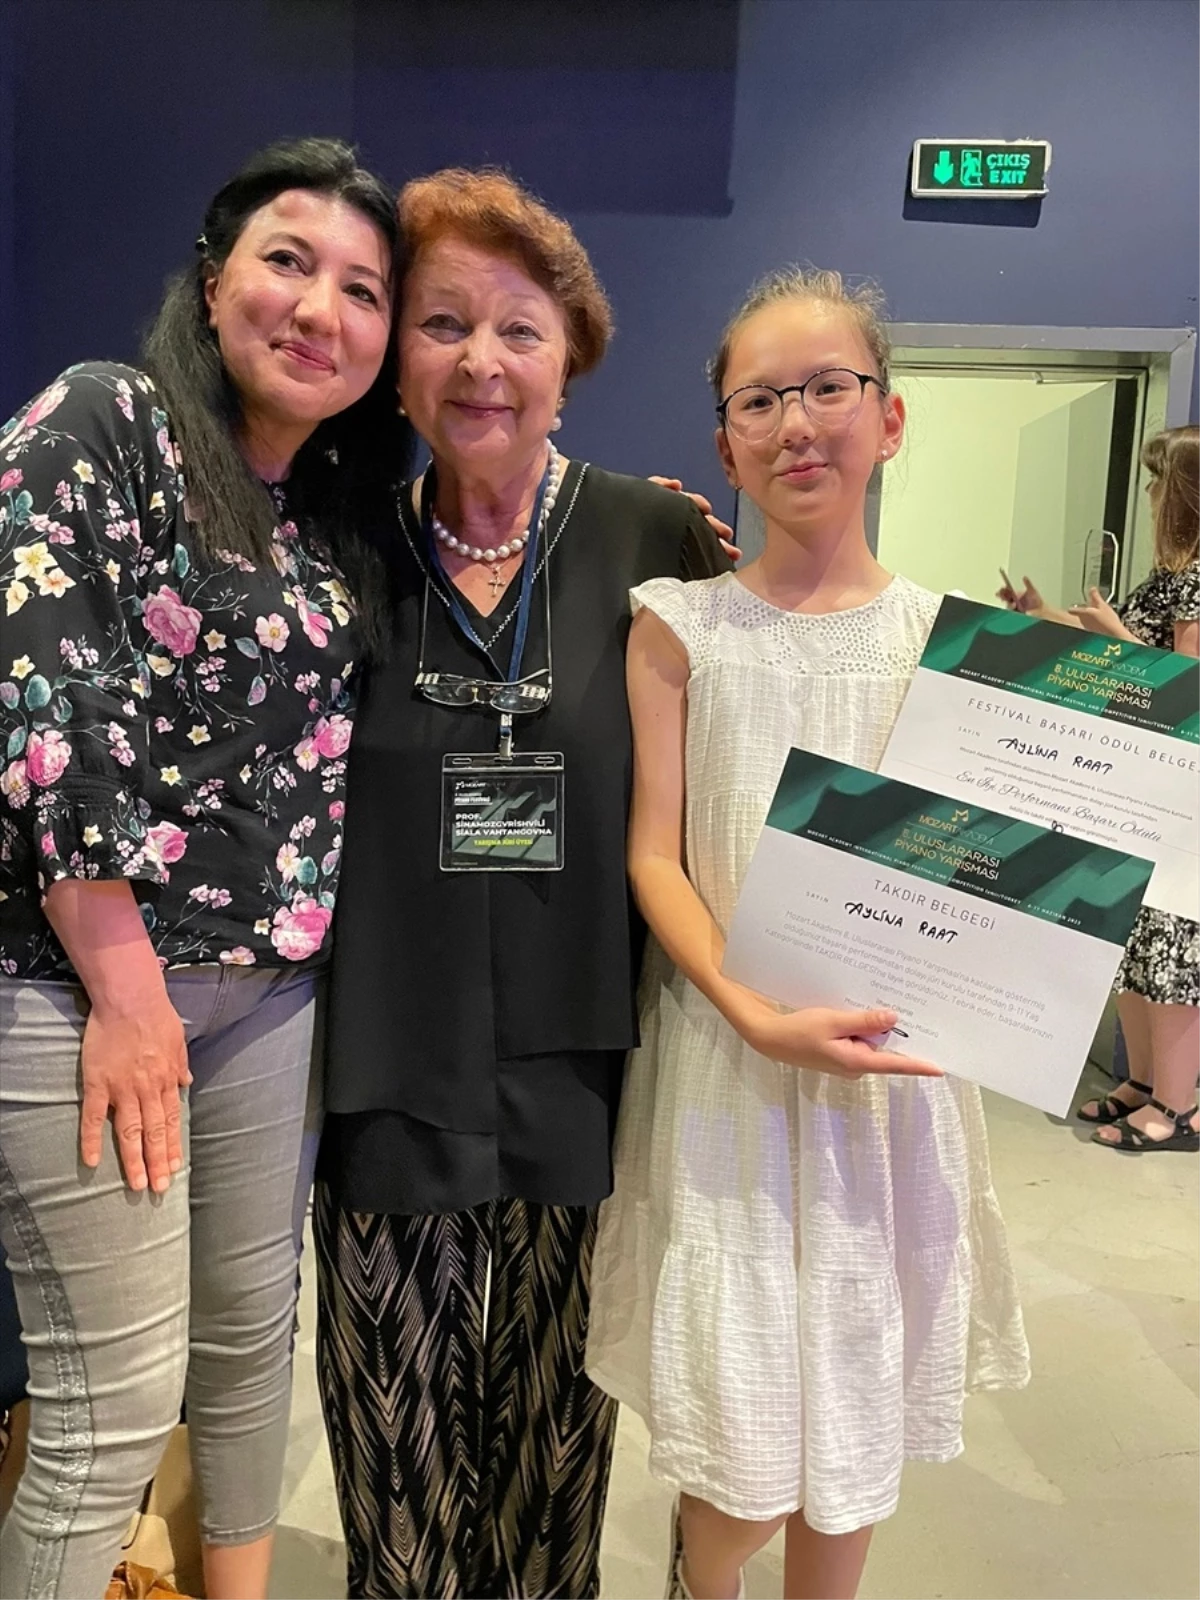 Antalya Büyükşehir Belediyesi İsmail Baha Sürelsan Konservatuvarı'ndan 10 yaşındaki Aylina Raat, milletlerarası piyano yarışında ödül aldı